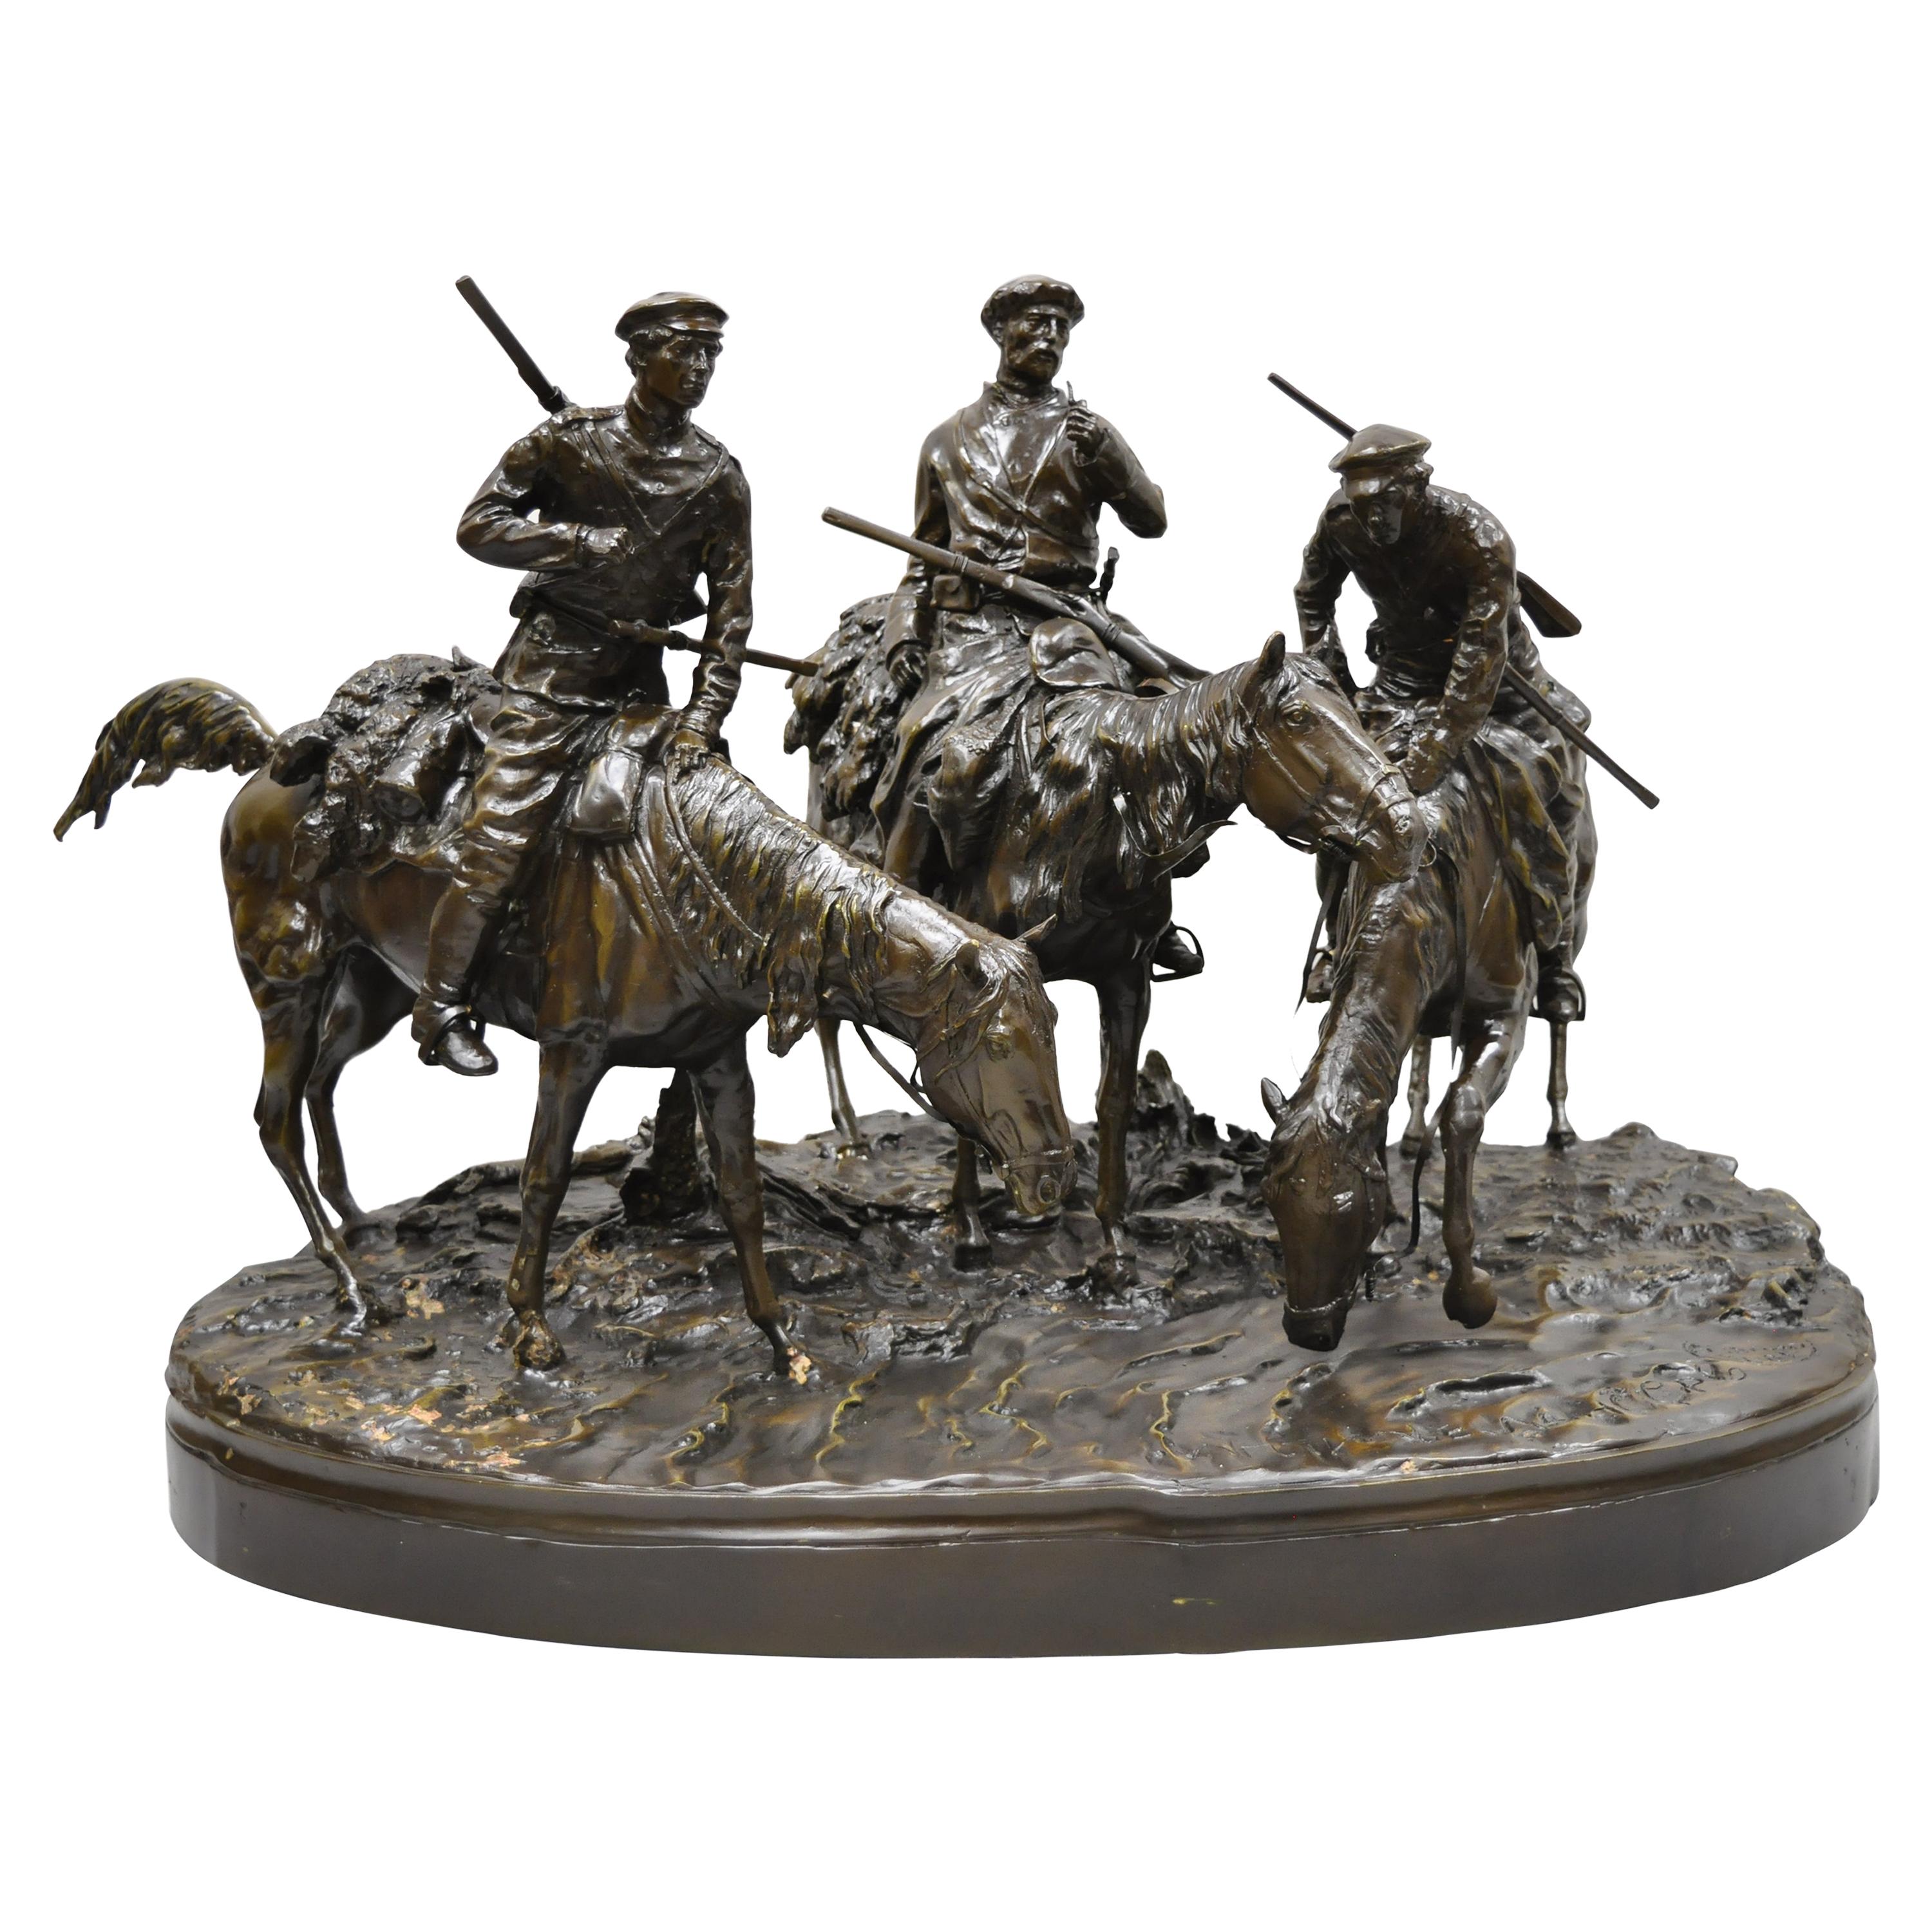 Grande statue en bronze représentant 3 chevaux en train de chasser d'après Evgeni Alexandrovich Lanceray